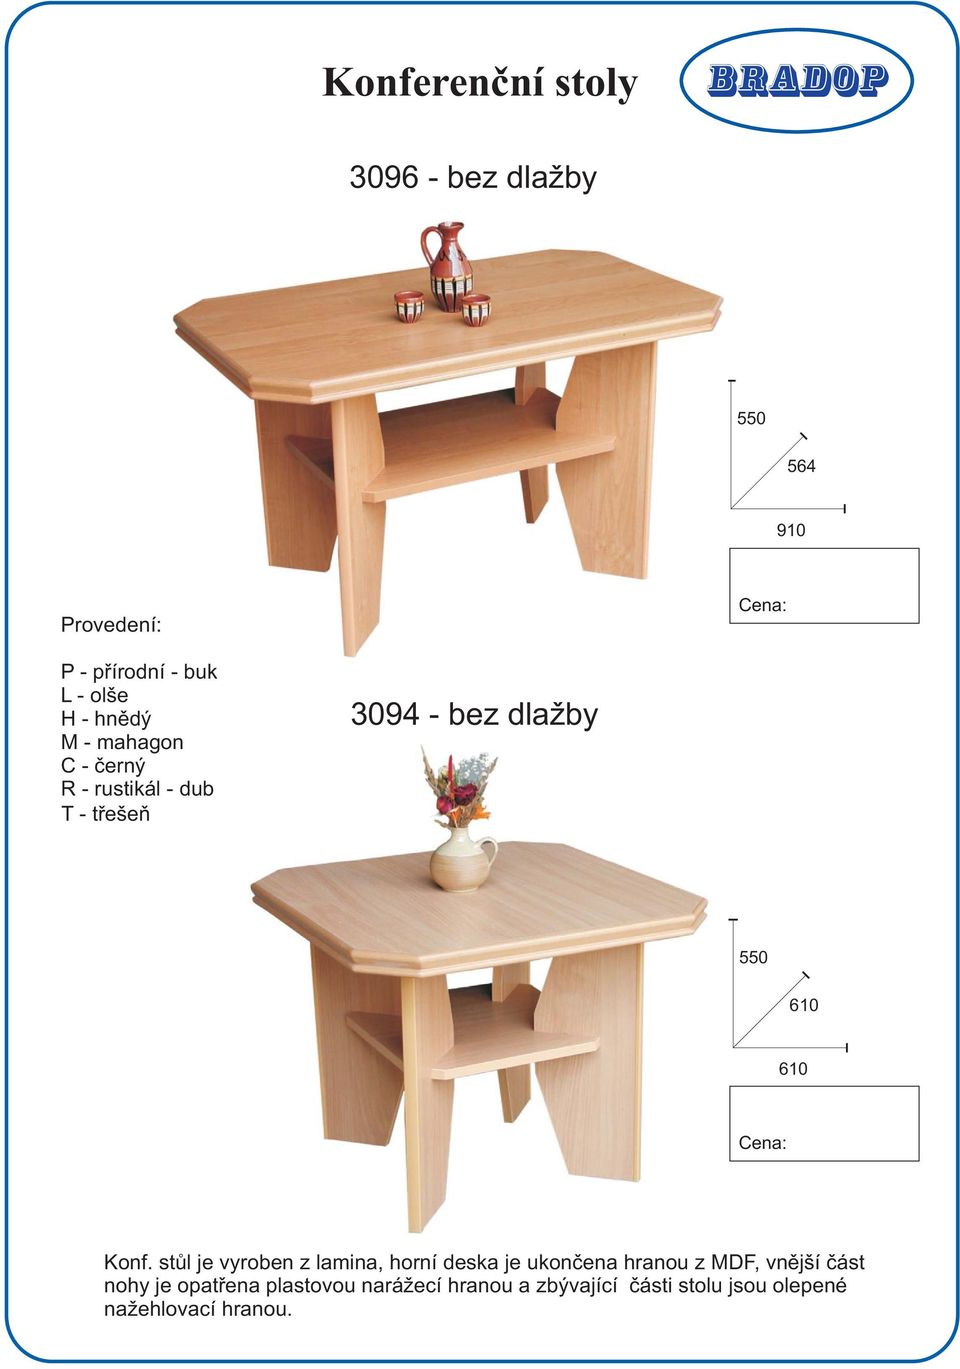 stůl je vyroben z lamina, horní deska je ukončena hranou z MDF, vnější část